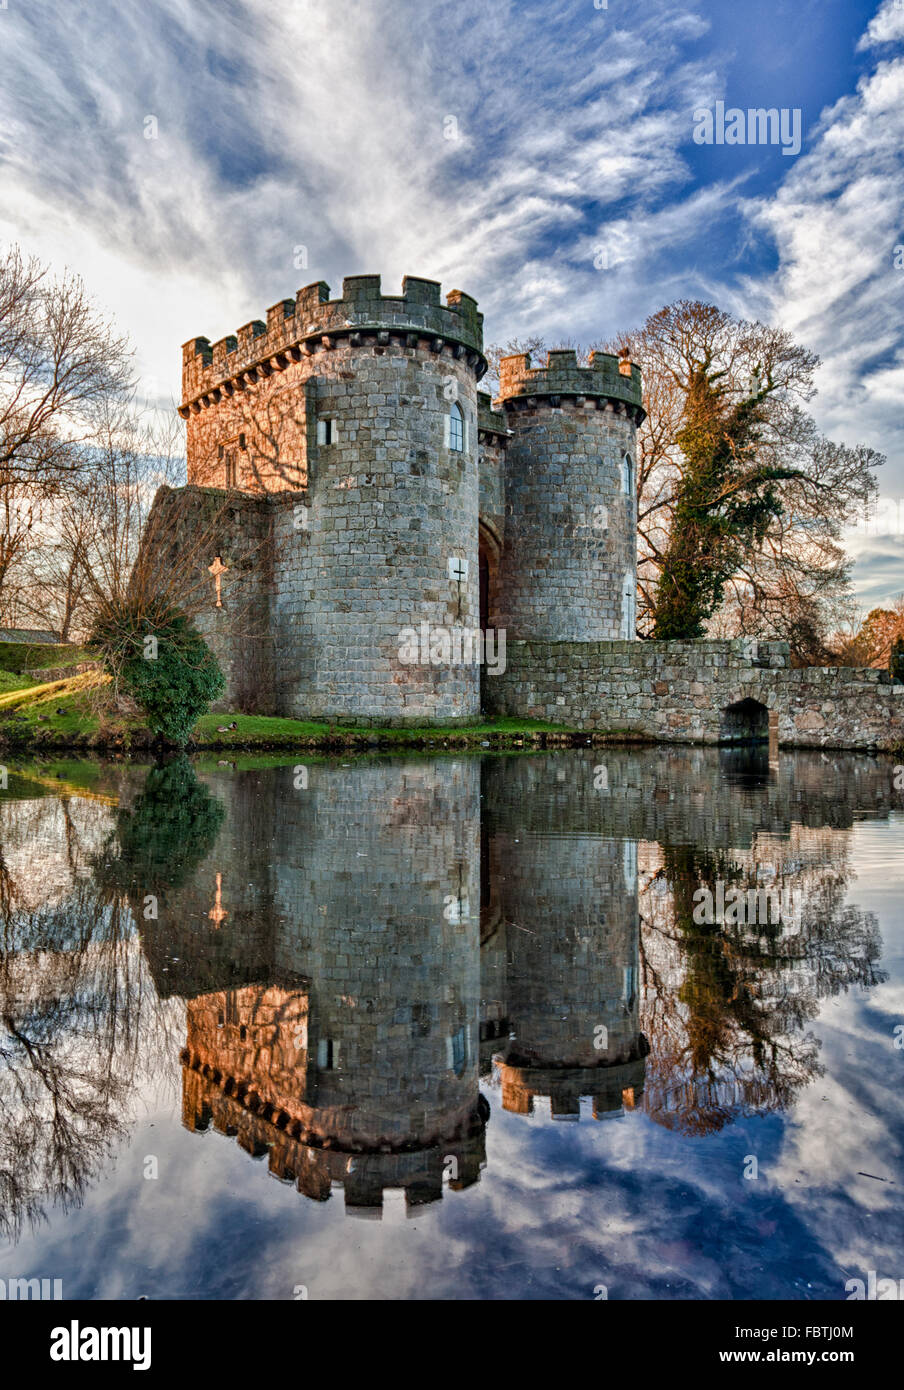 Whittington Castle in Shropshire reflecting on moat Stock Photo